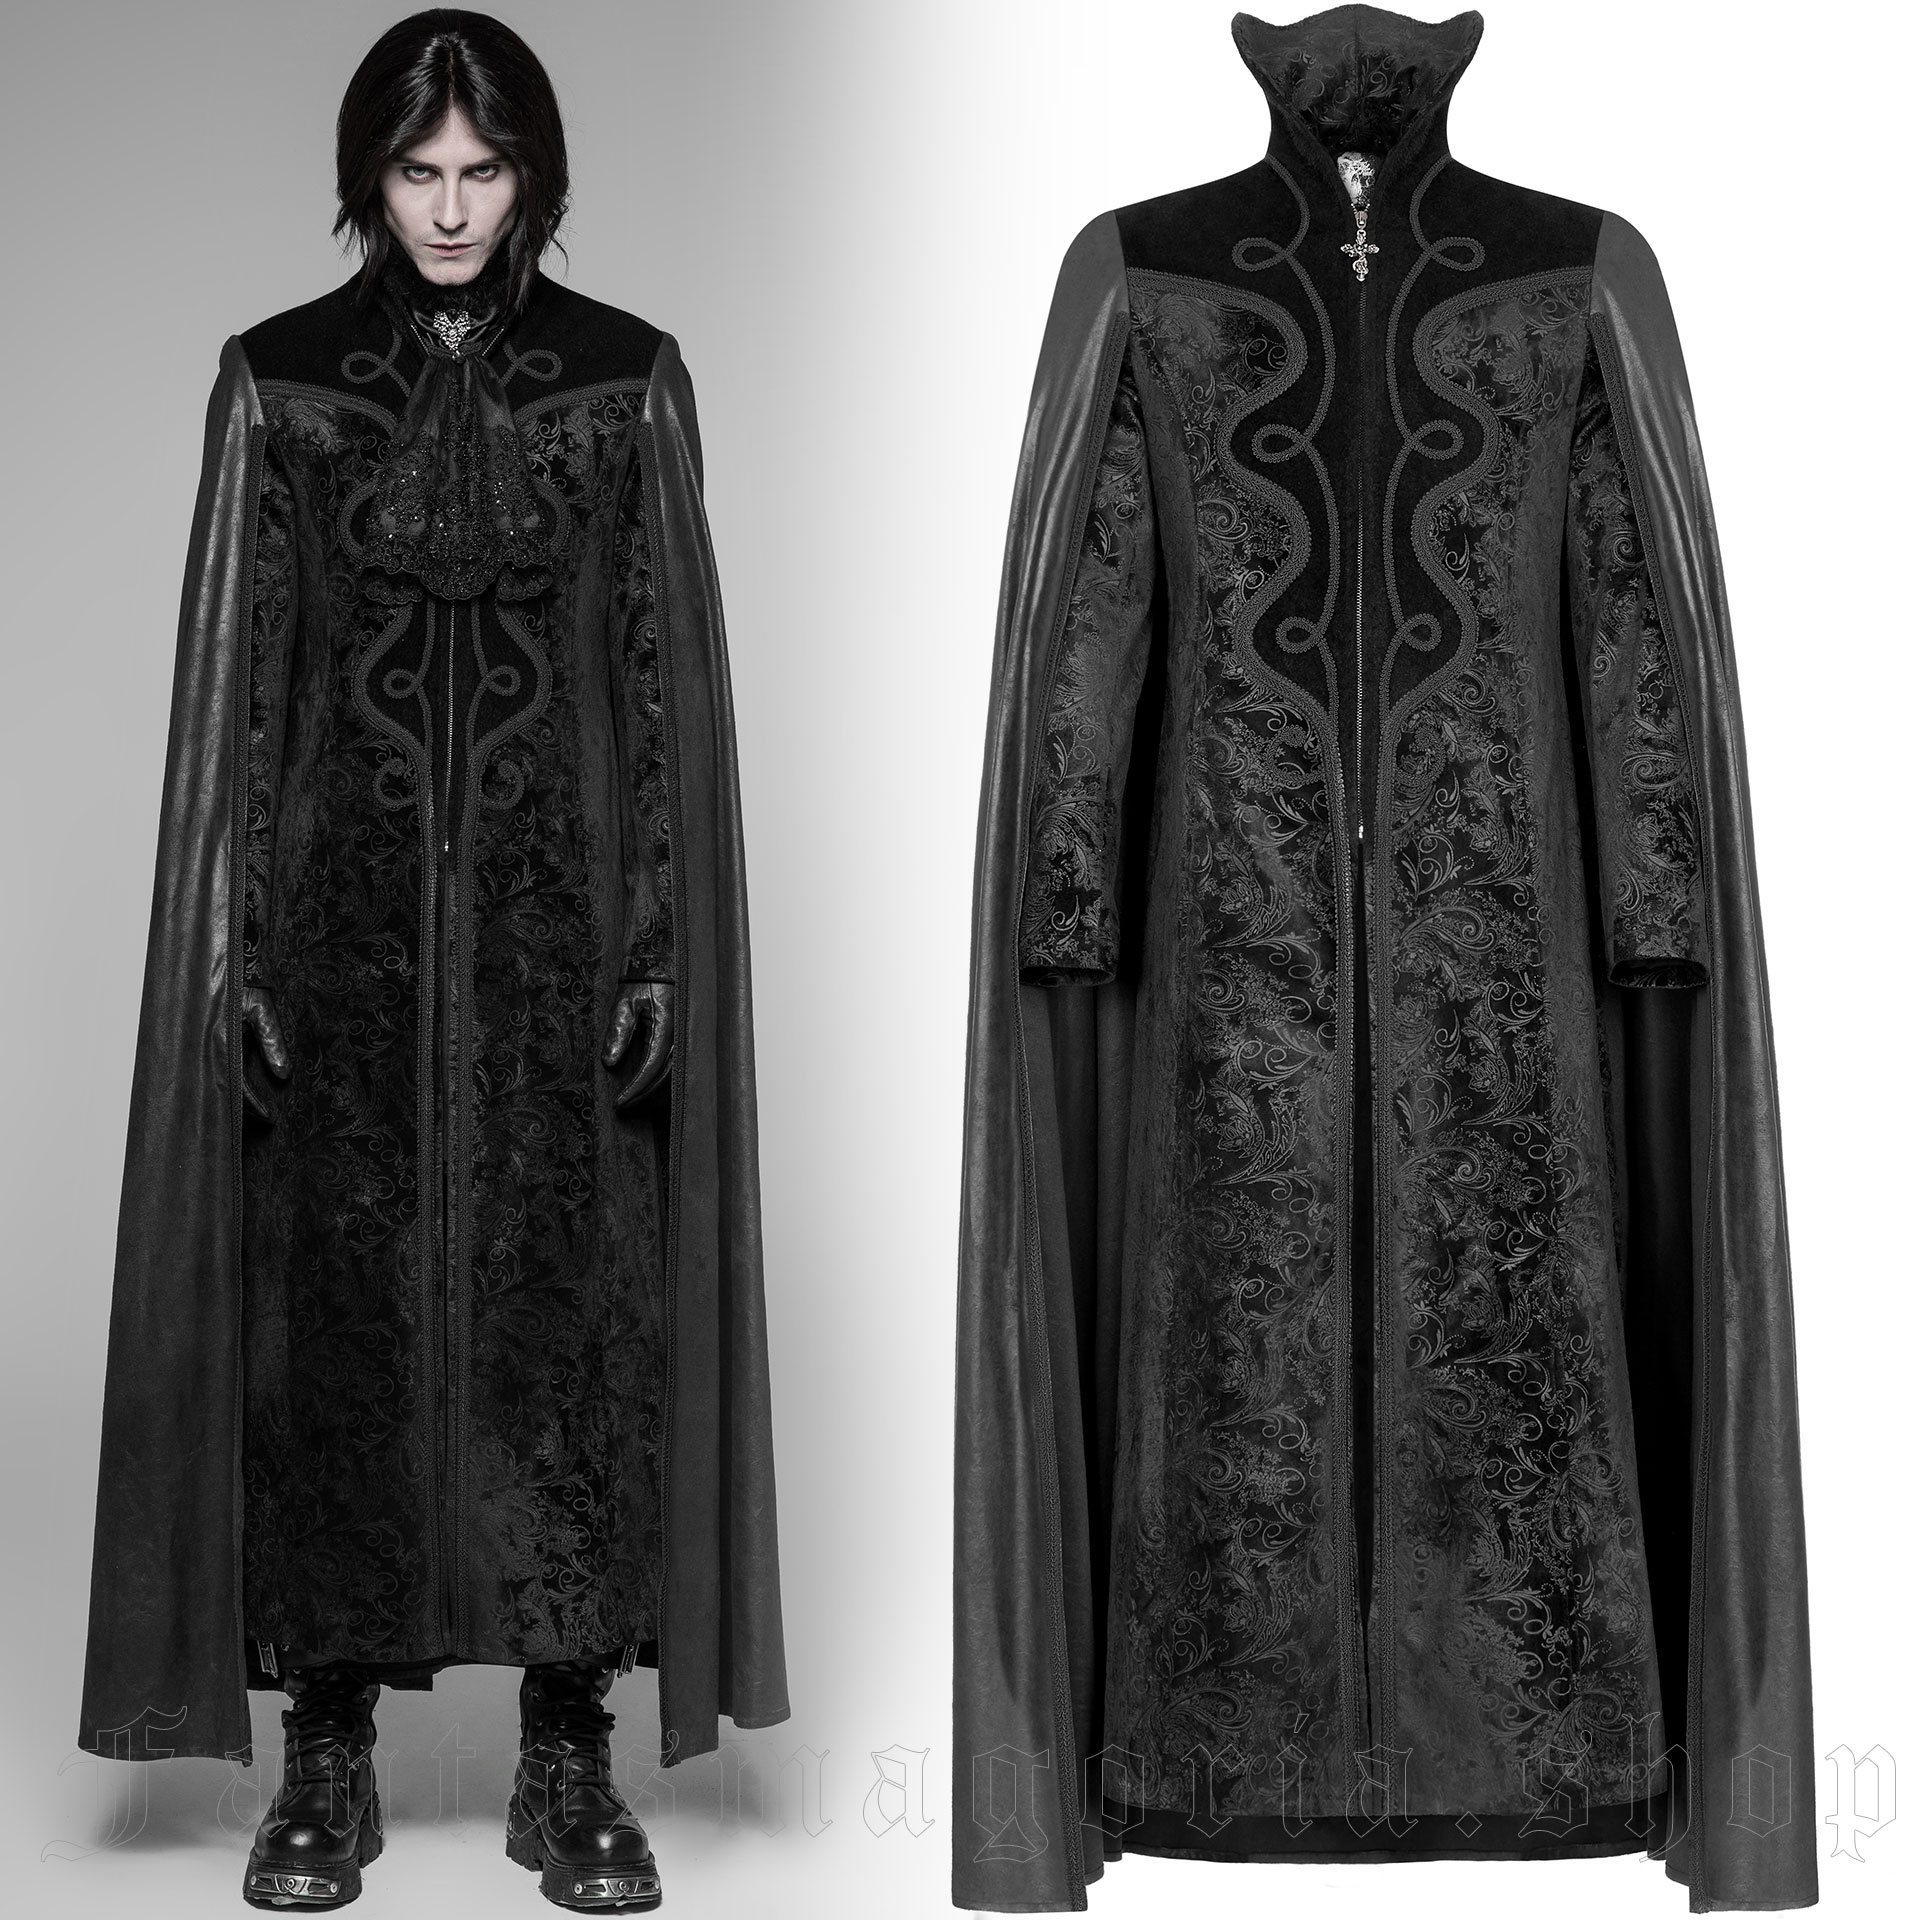 Black velvet coat with a mantle cape by Punk Rave.